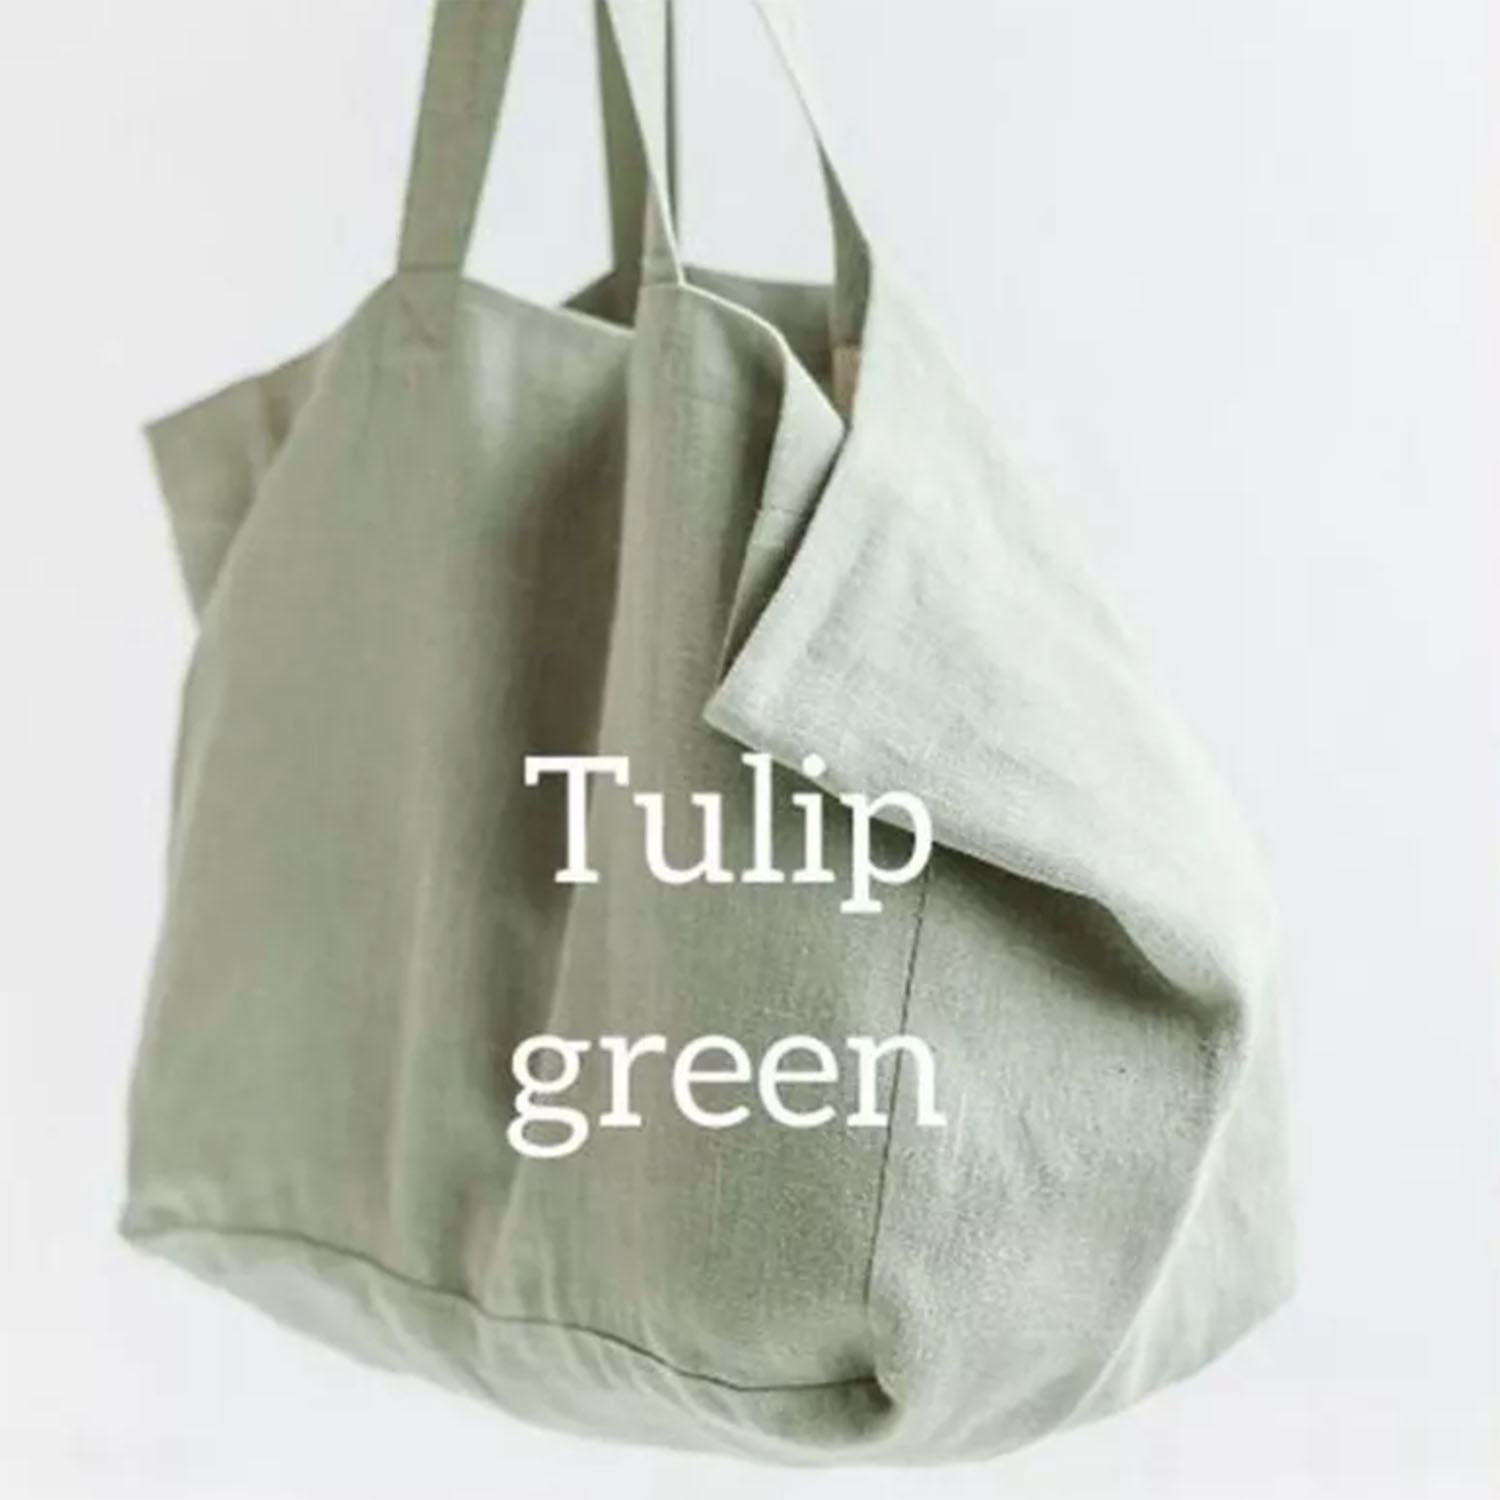 Green linen bags